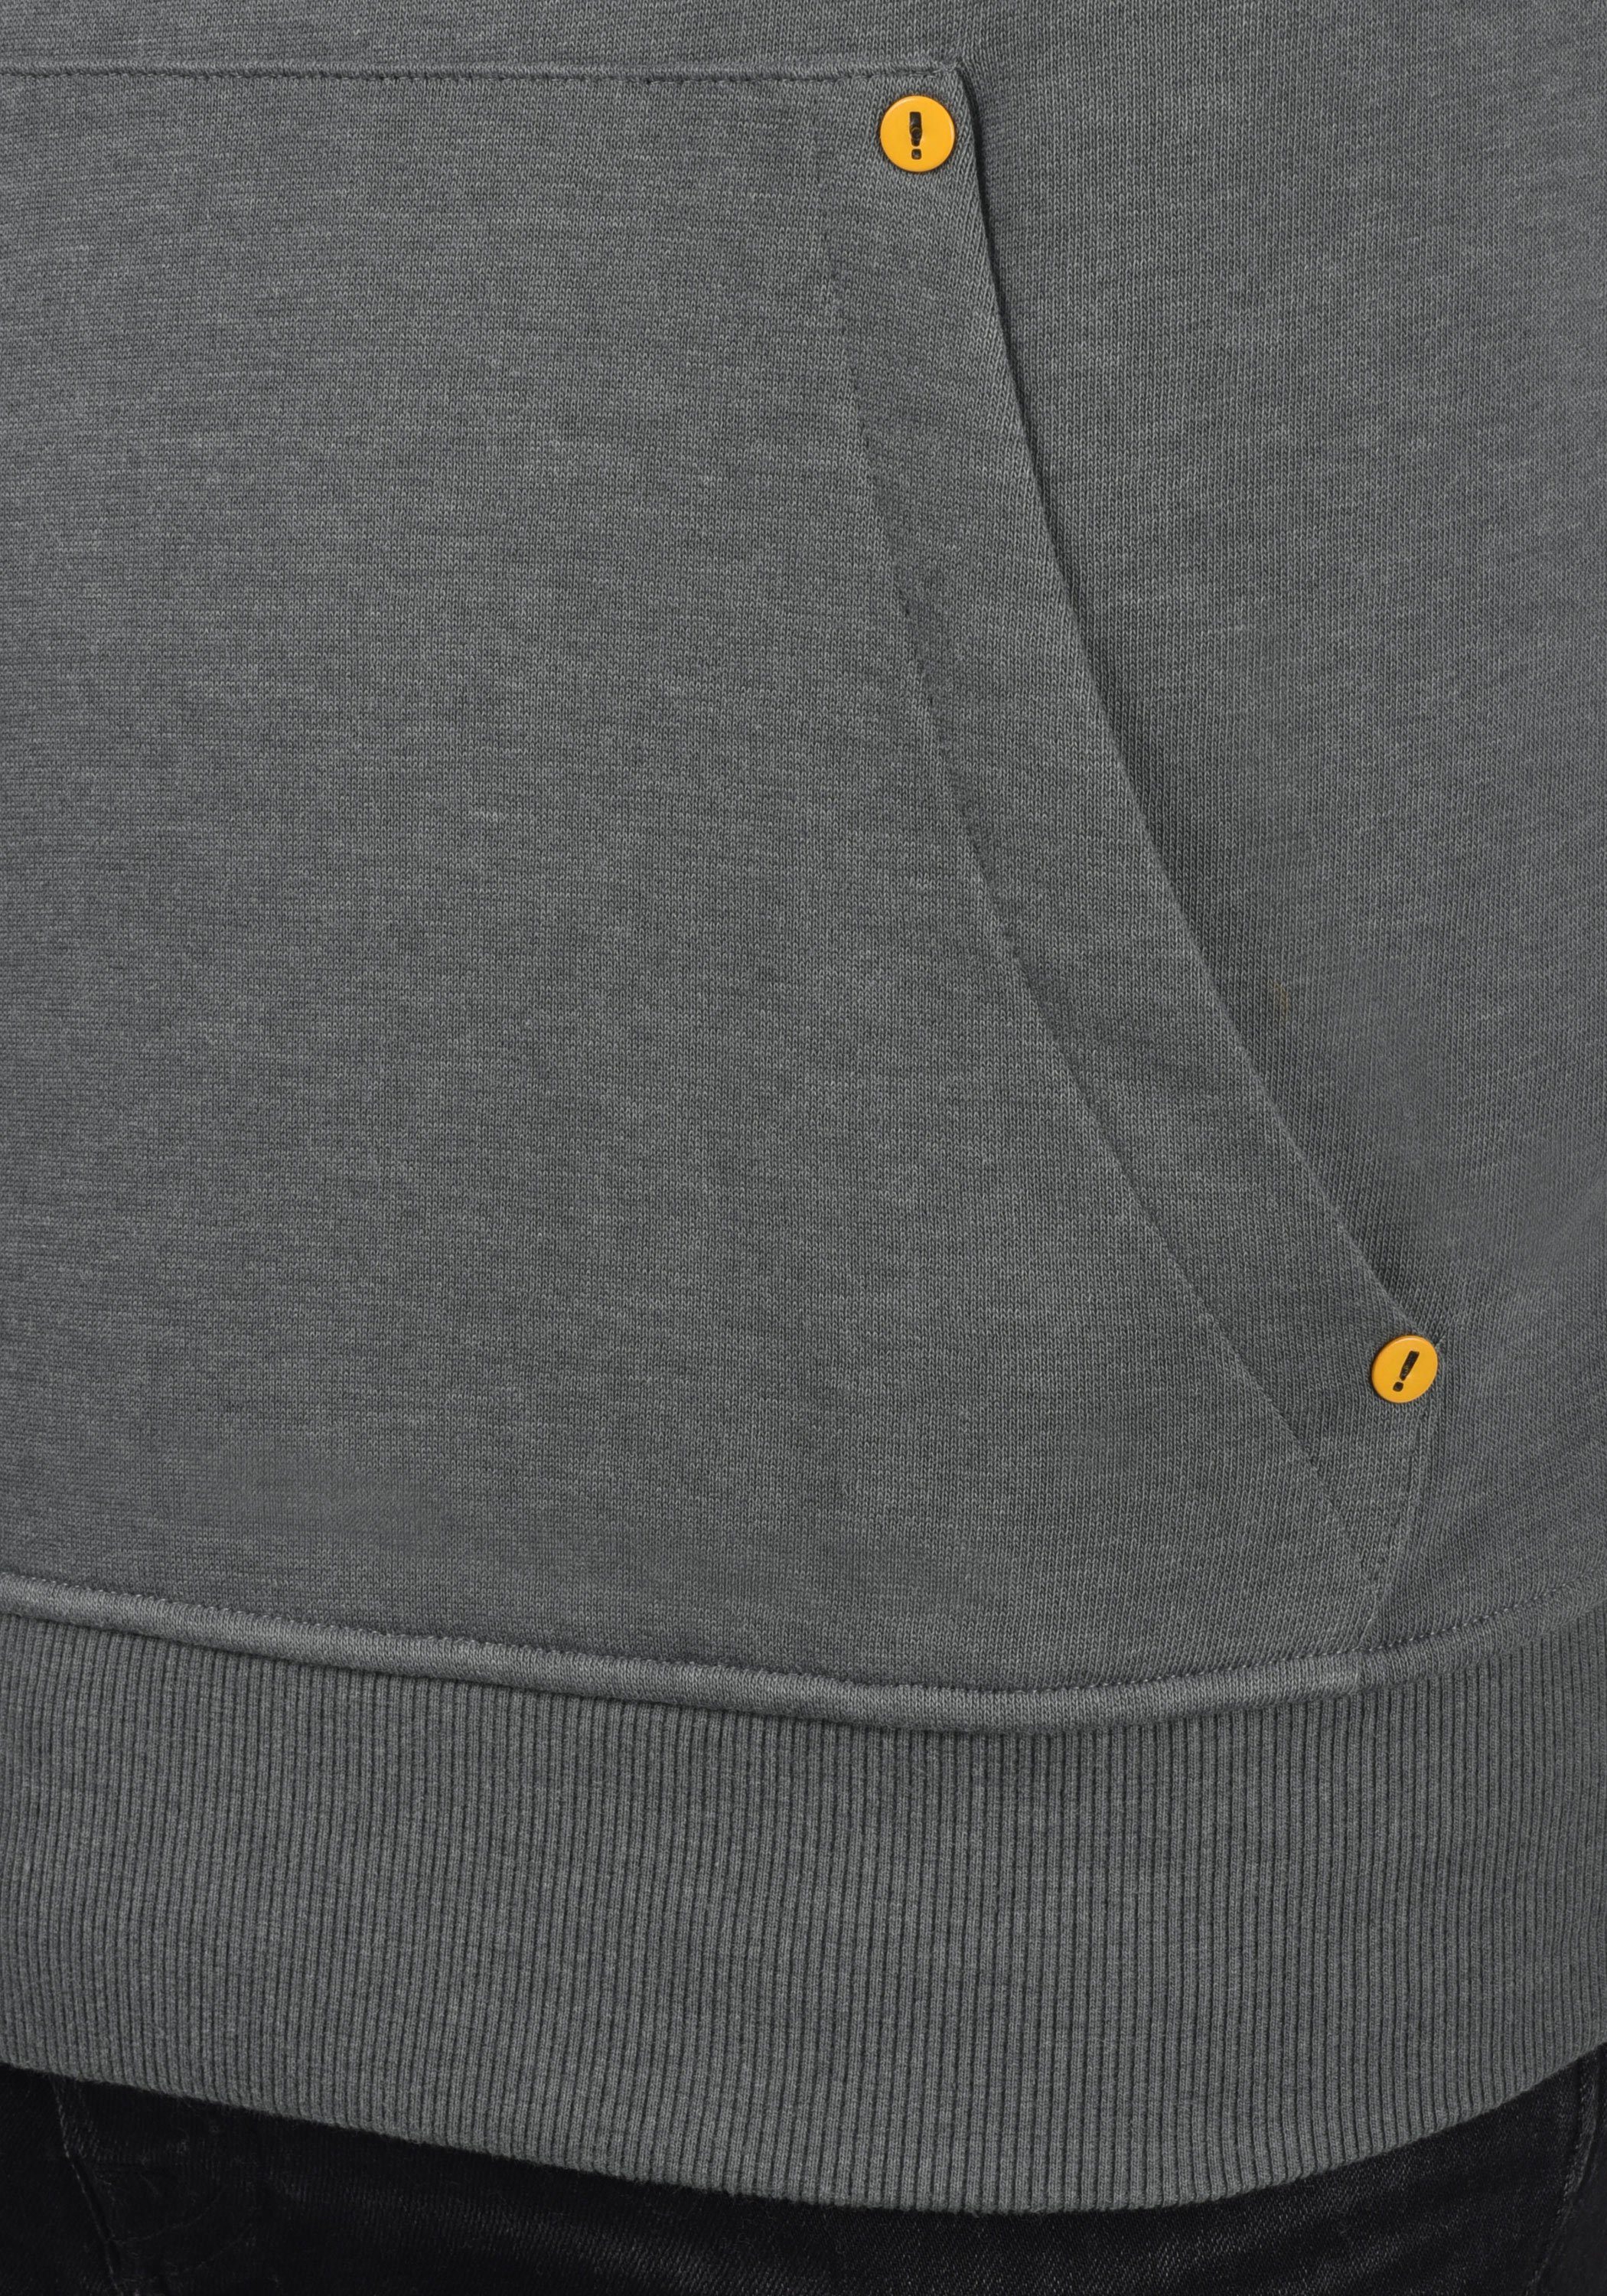 kontrastreichen (1840051) !Solid Melange mit Details farblichen Kapuzensweatshirt Hoodie SDKenan Grey